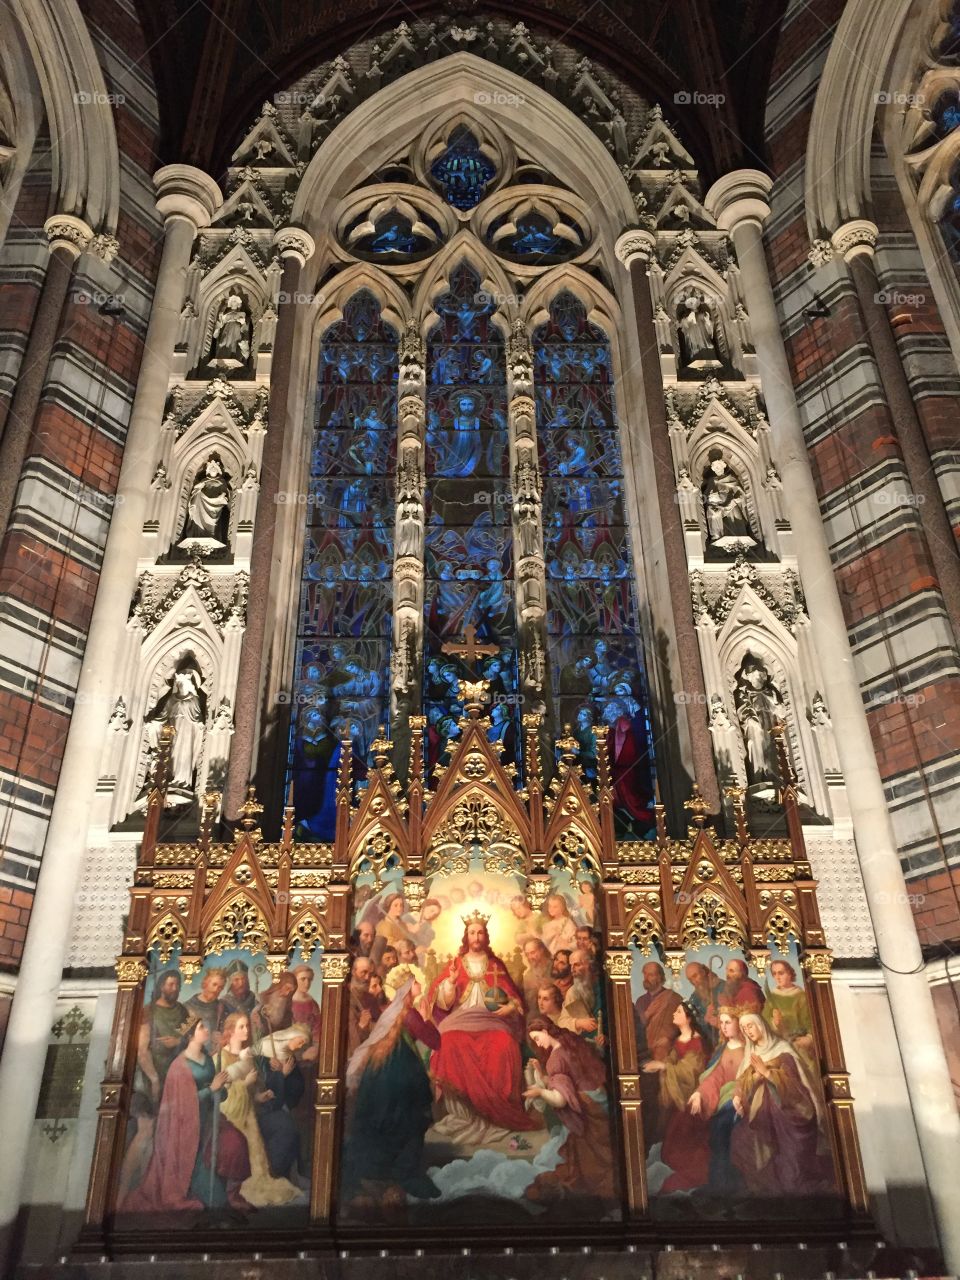 All saints chapel window